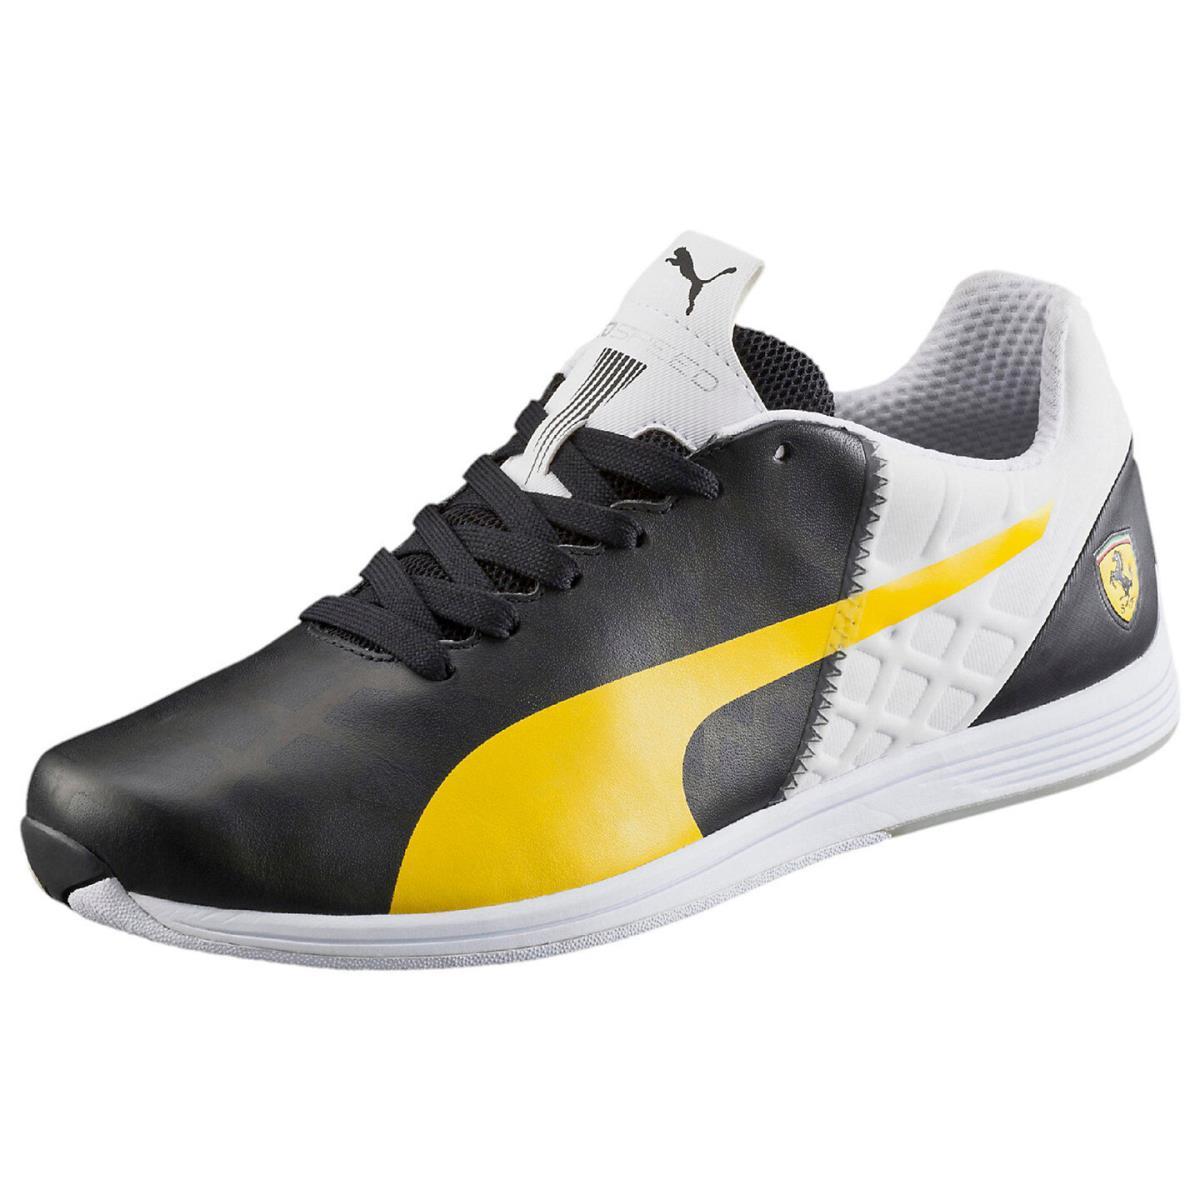 Men`s Puma Ferrari Evospeed 1.4 Casual Shoes 305555 01 Sizes 8-11 Black-vibran - black-vibrant yellow-white